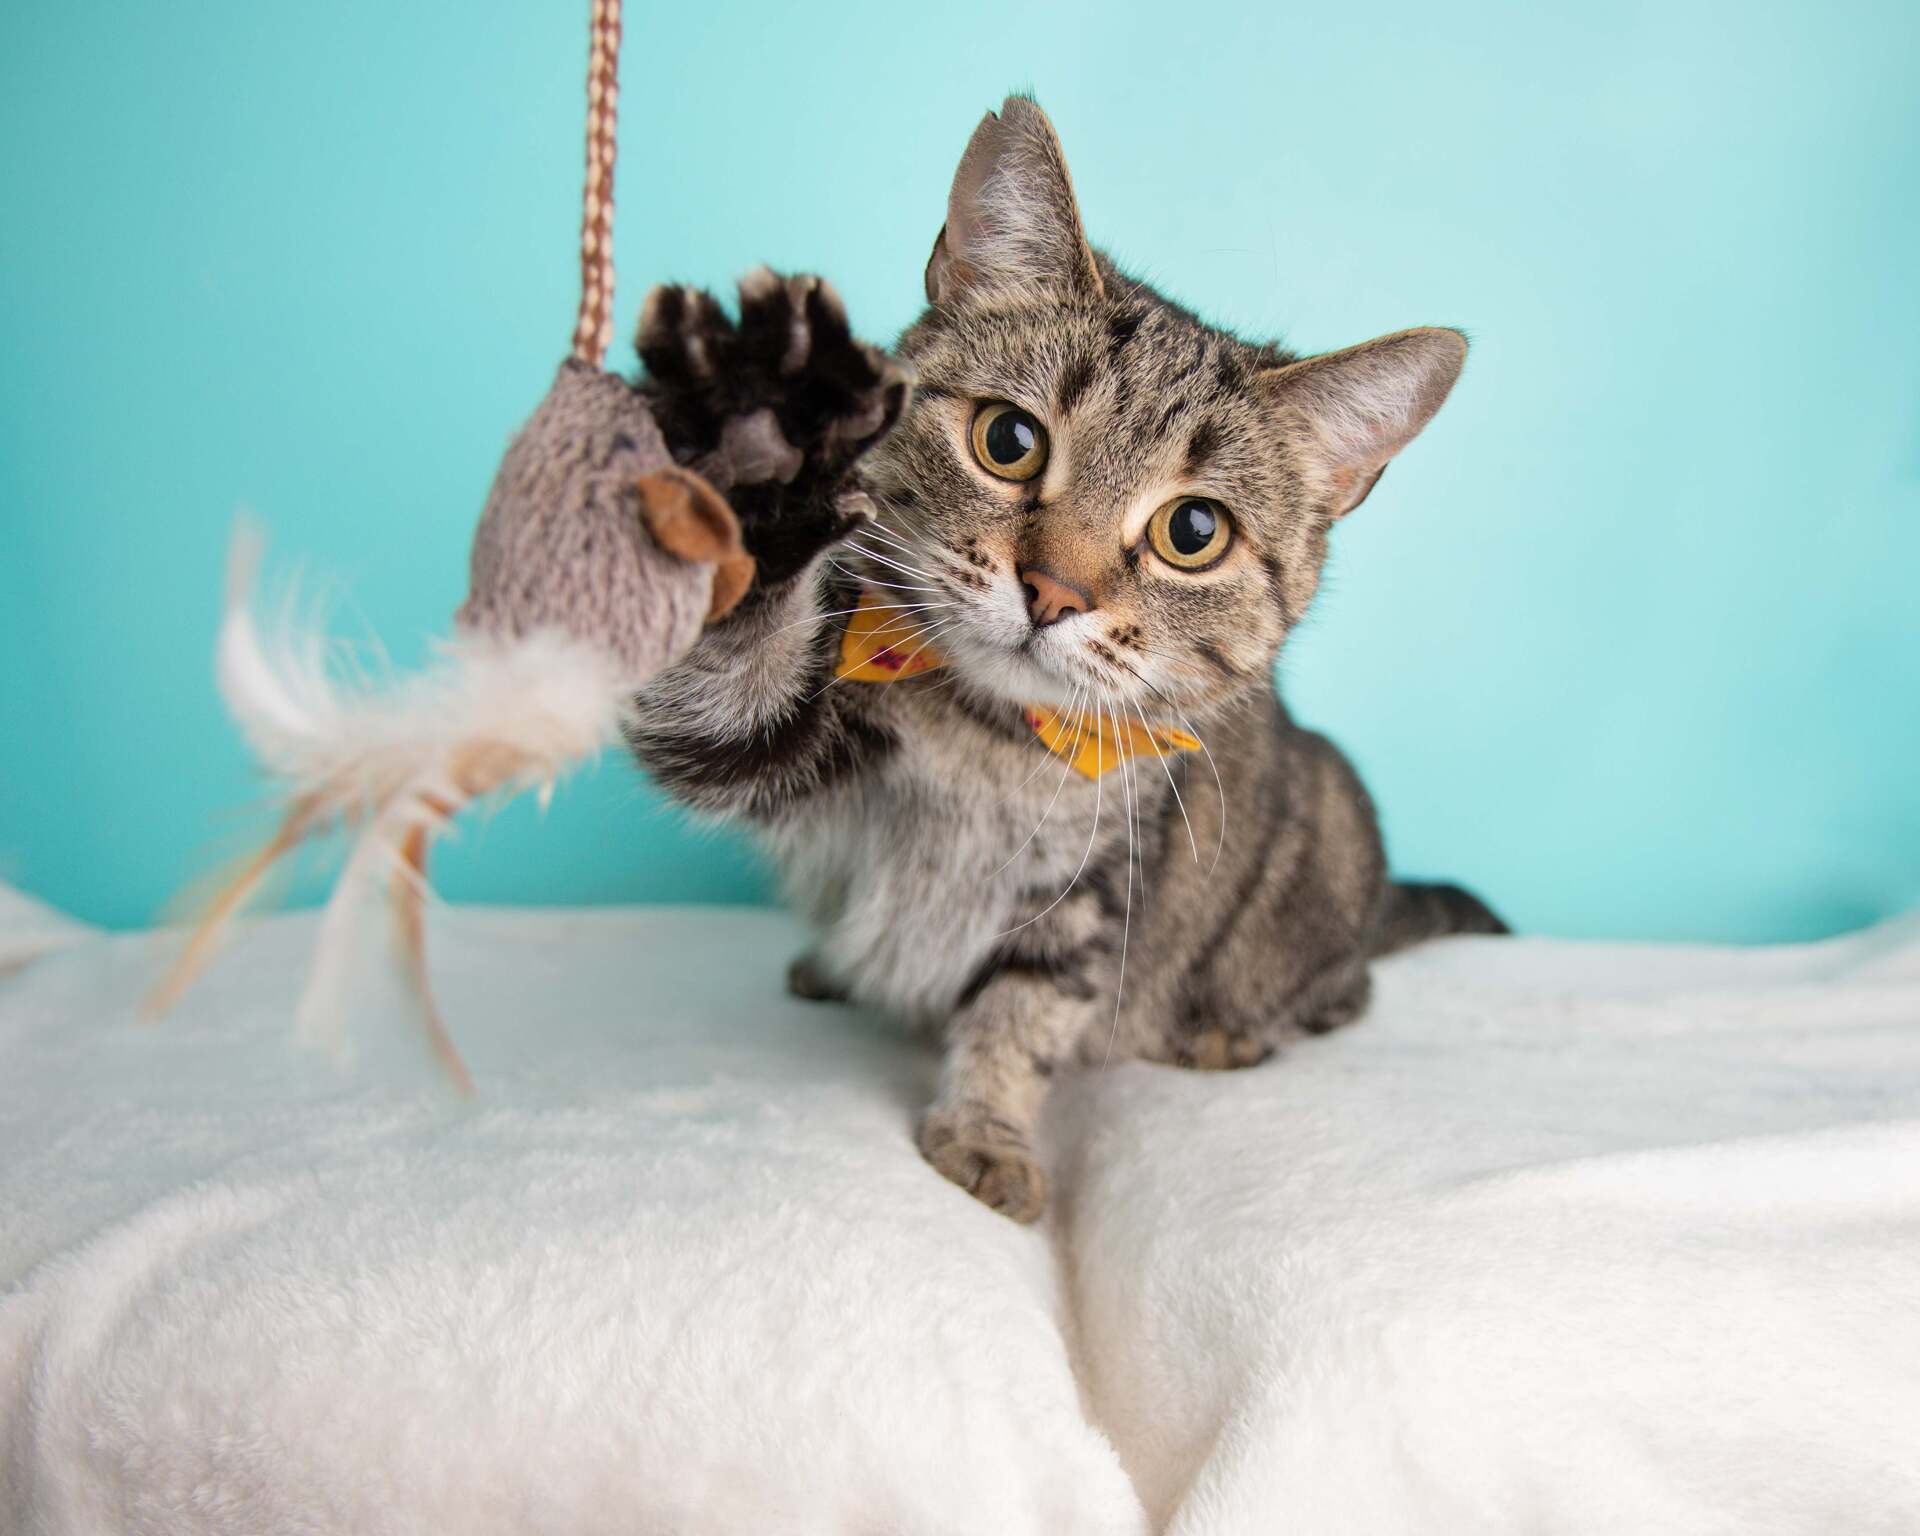 Un chat jouant avec un jouet en forme de souris